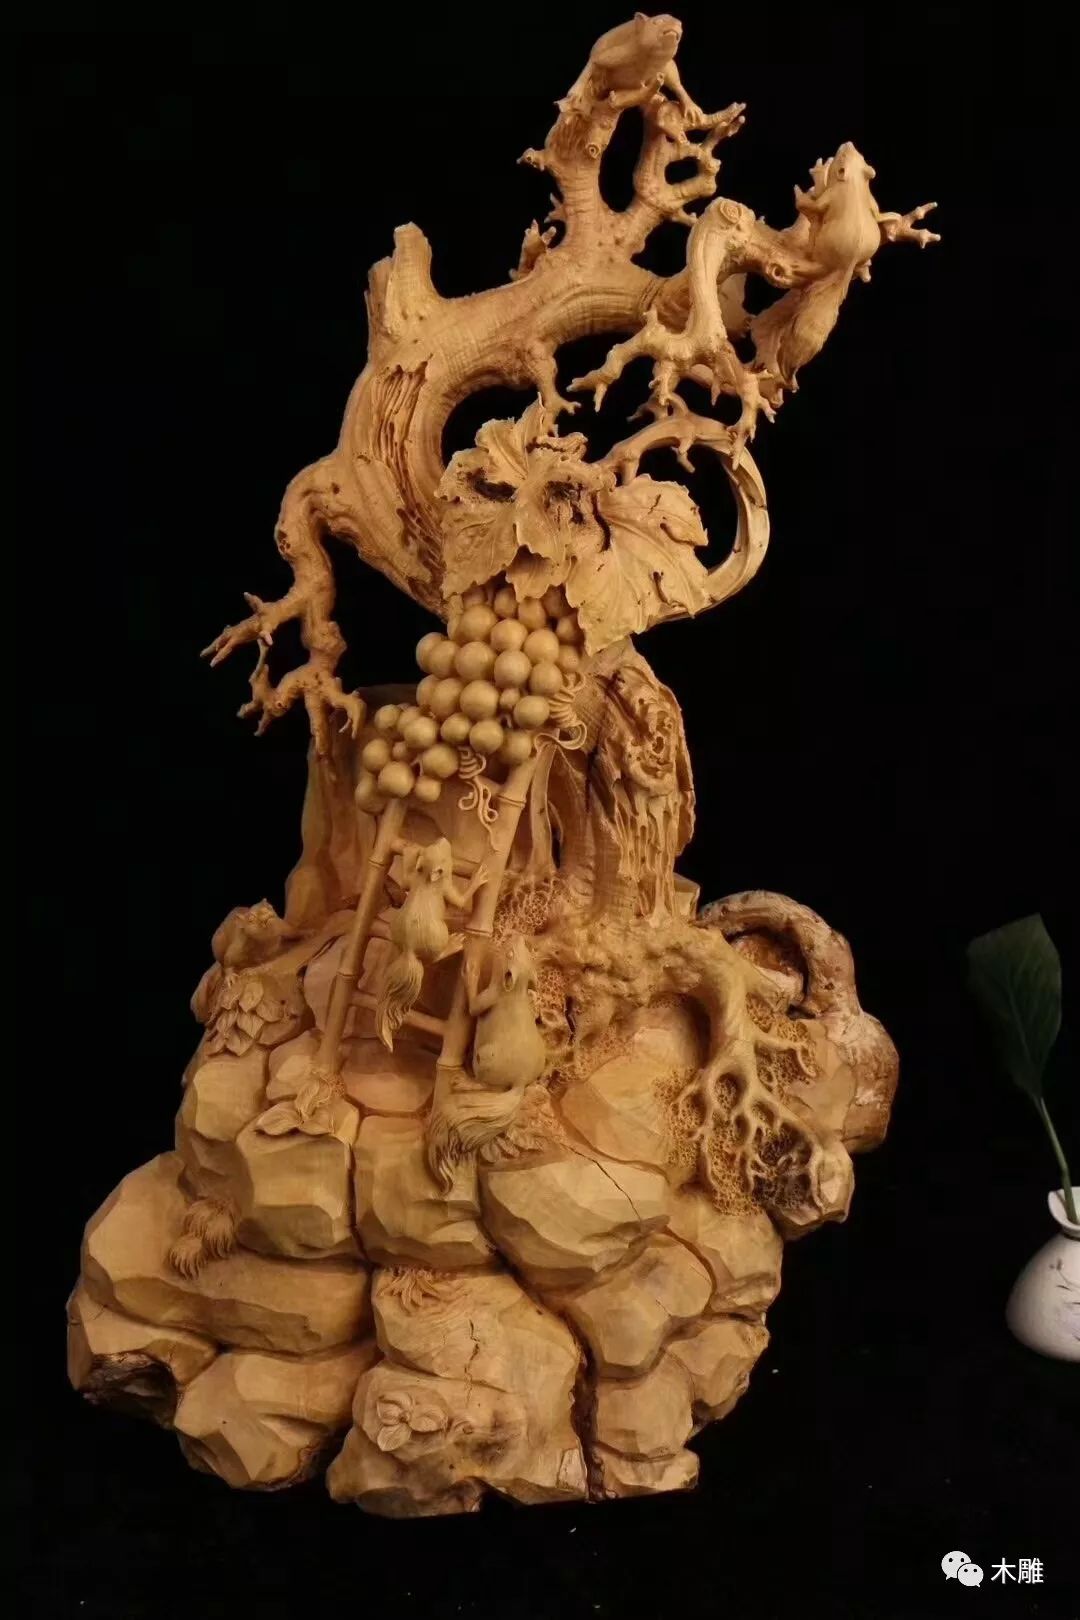 件件精工写实的黄杨木雕尽显技艺精彩